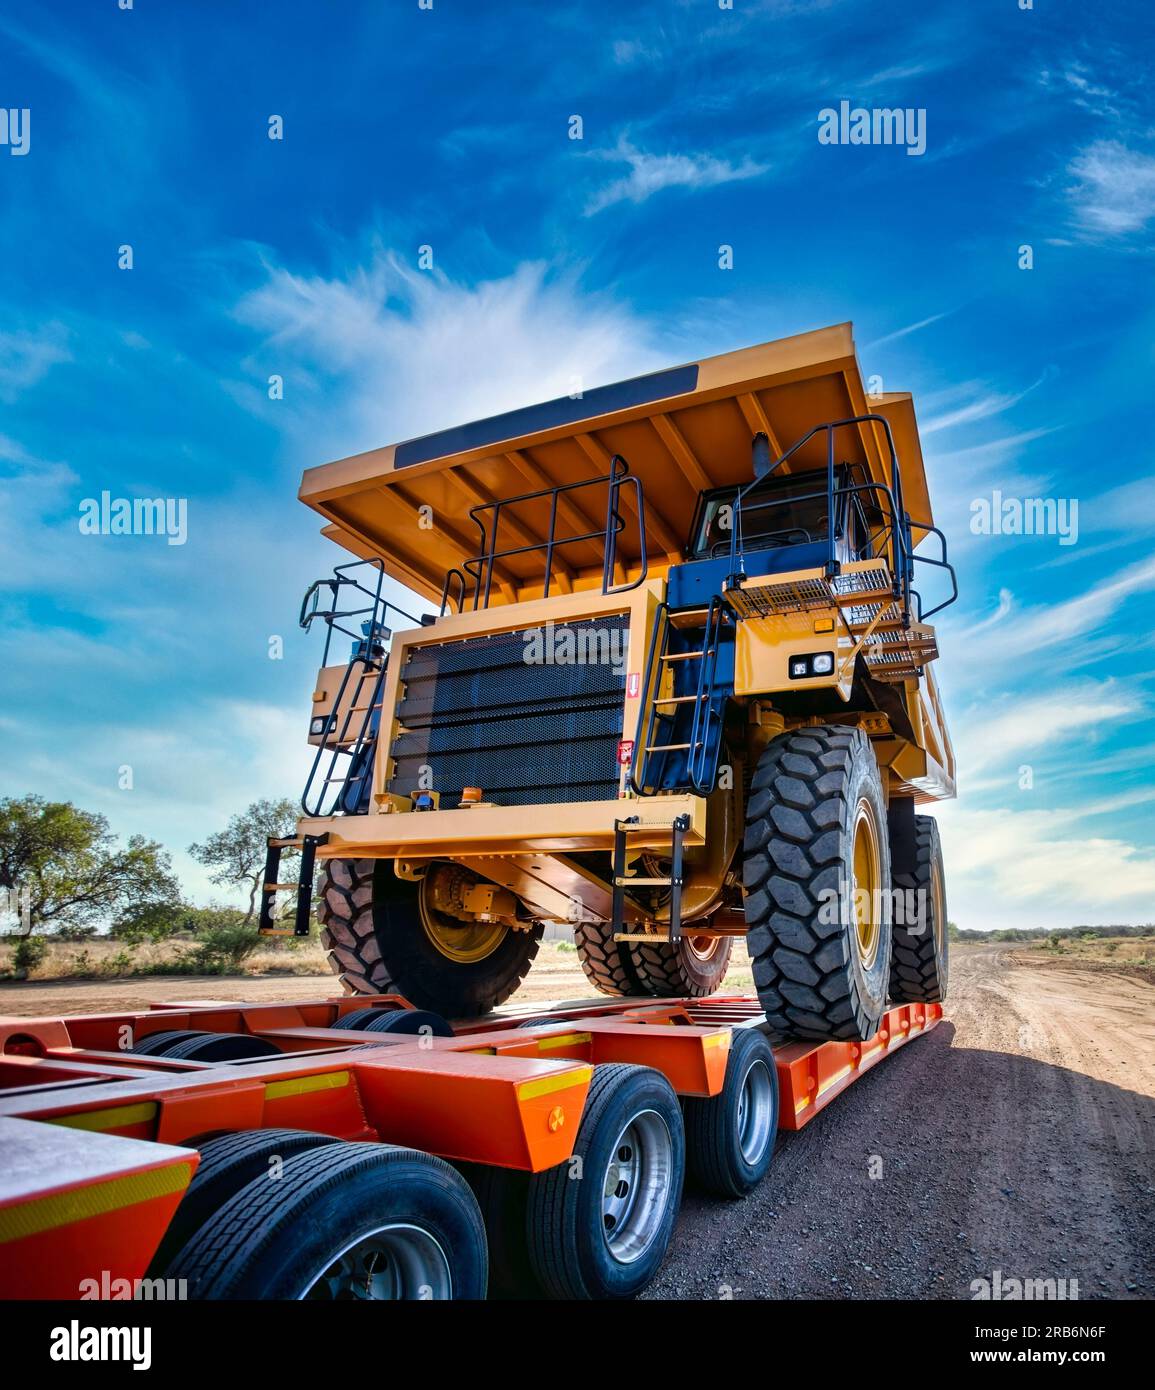 Schwertransporter riesiger gelber Bergbaulaster oben auf einem Anhänger auf einer unbefestigten Straße Stockfoto